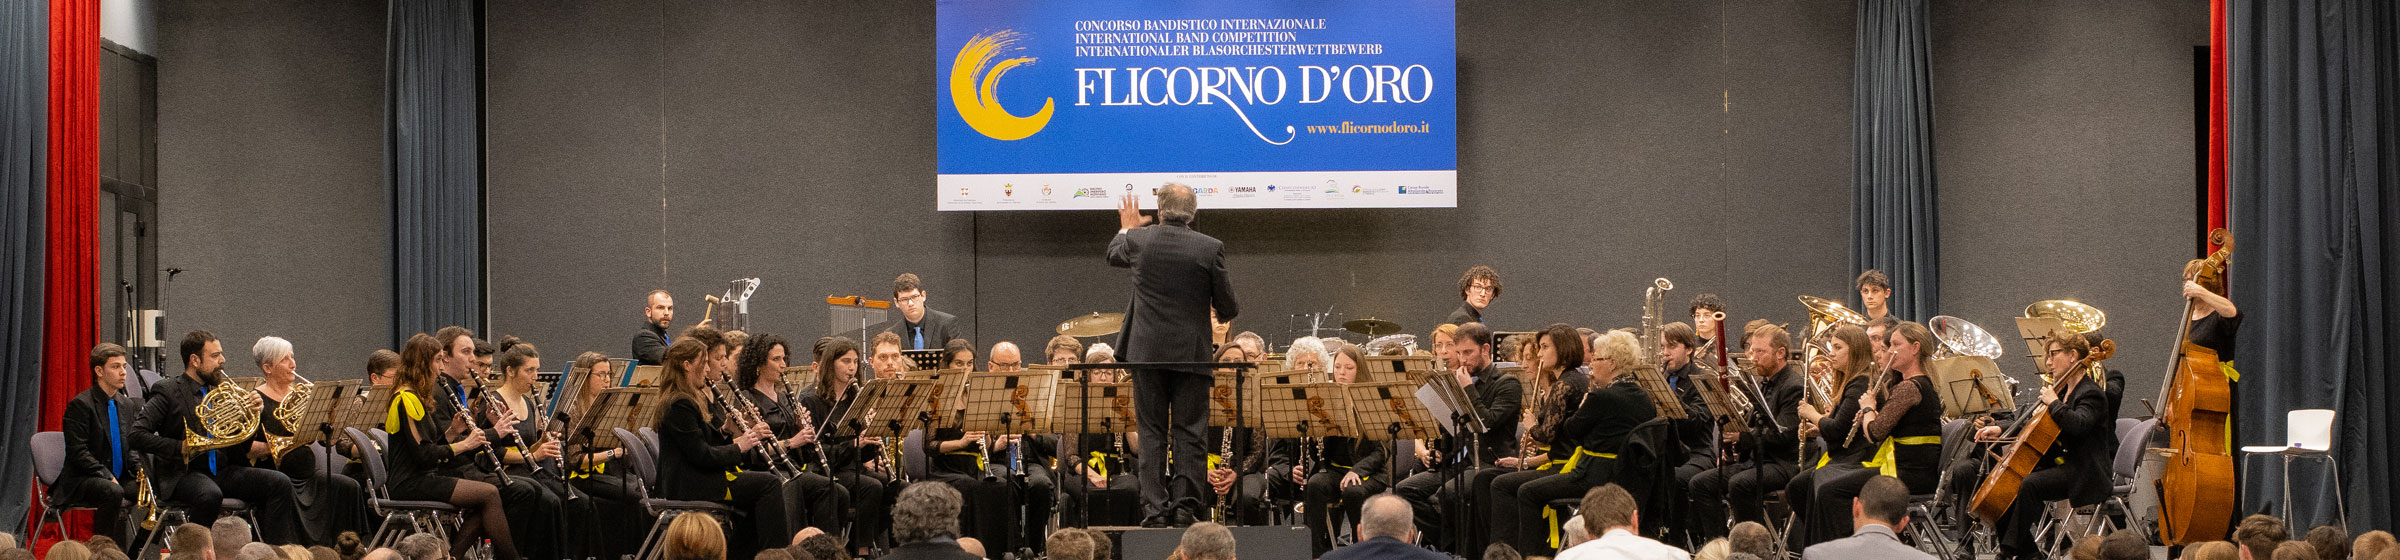 Flicorno d'Oro - Flicorno d'Oro - Concorso bandistico internazionale